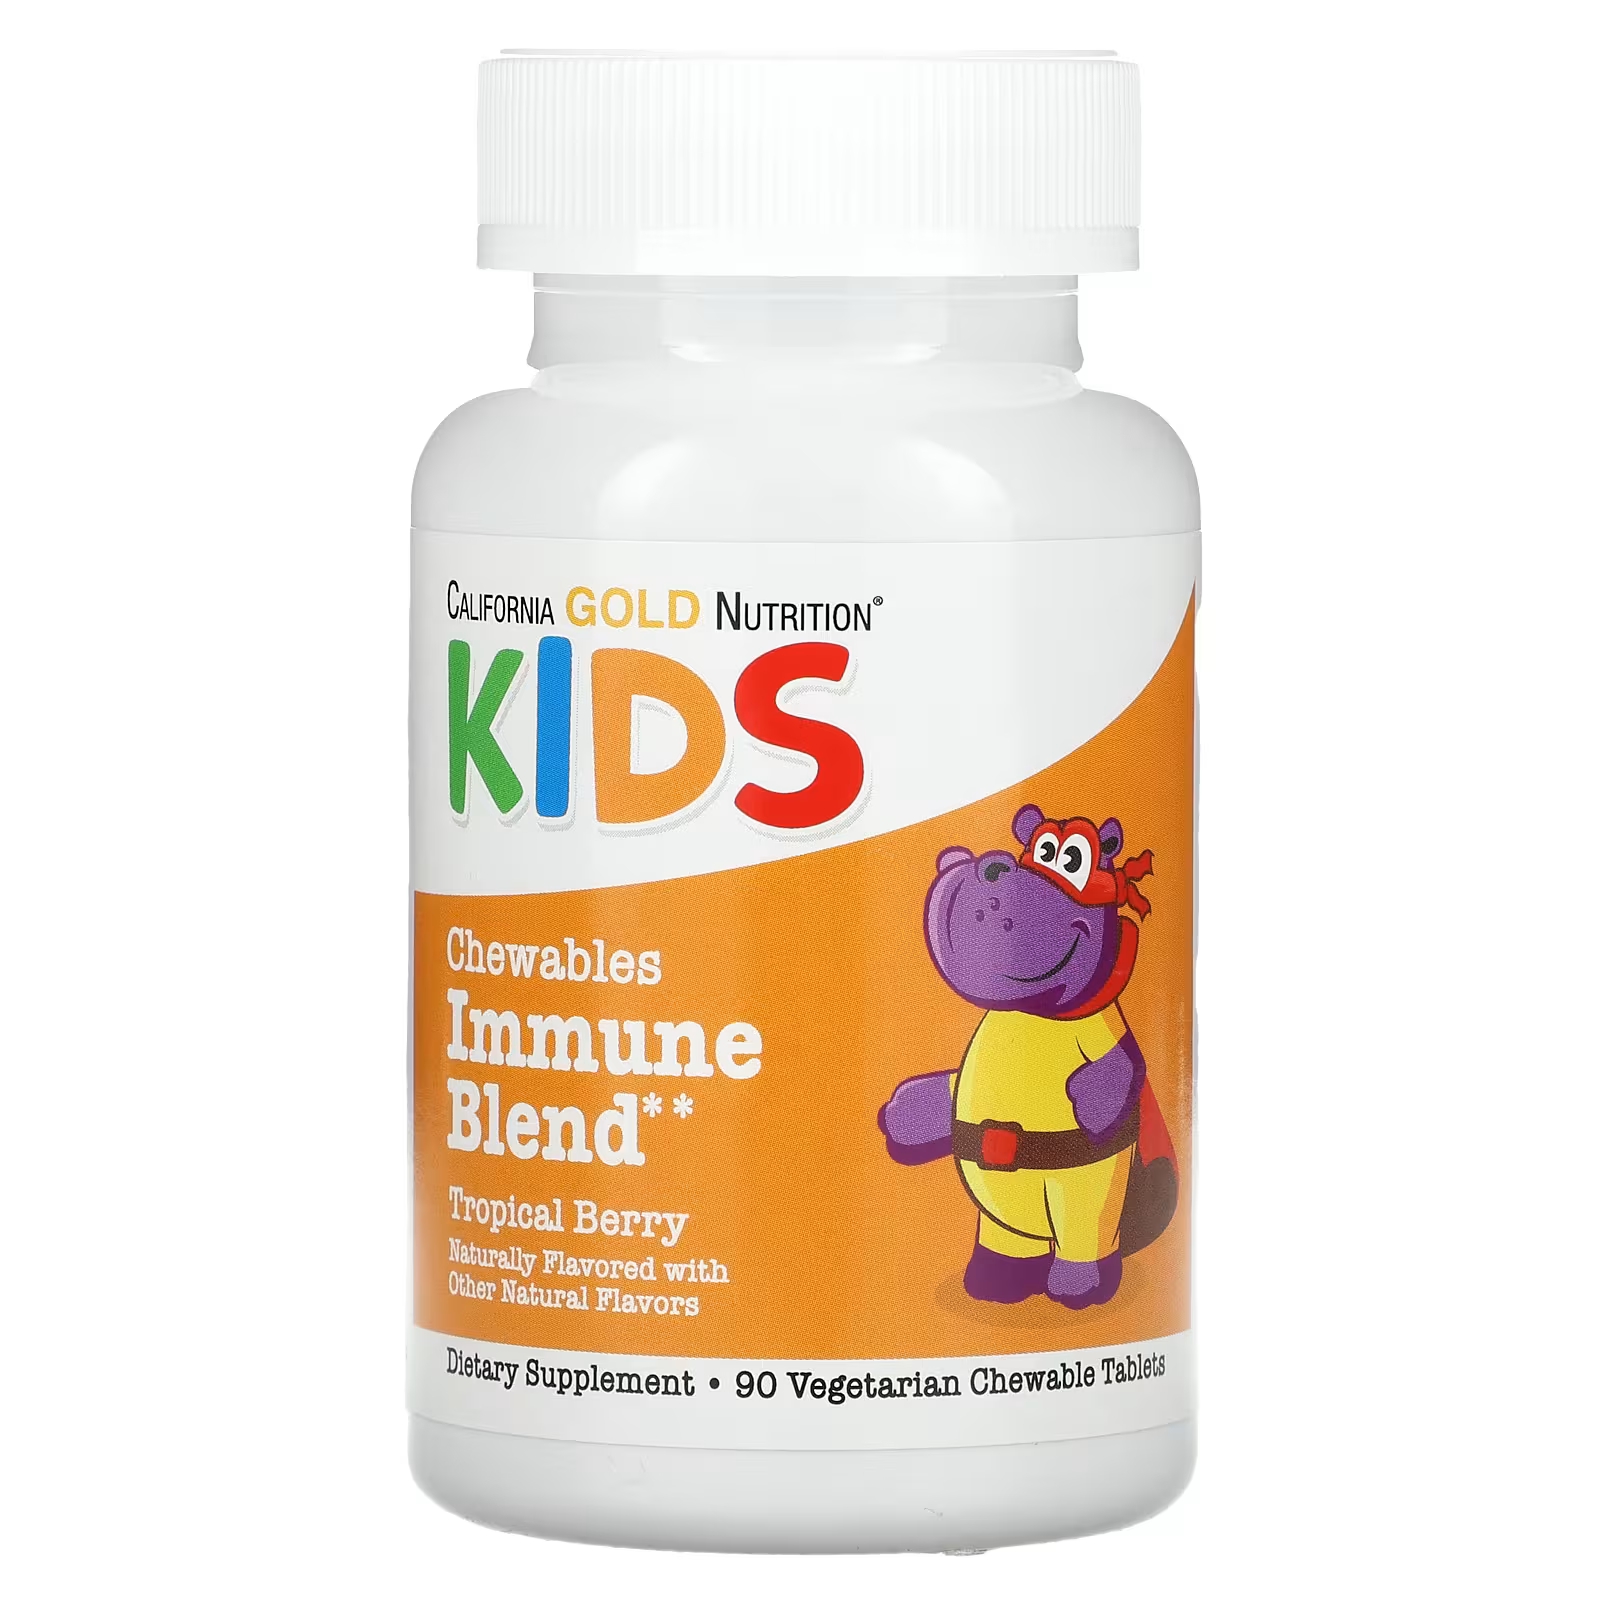 Жевательная смесь для иммунитета детей California Gold Nutrition, натуральный вкус тропических ягод, 90 вегетарианских таблеток комплекс витаминов и минералов для укрепления иммунитета plantago multivitamin